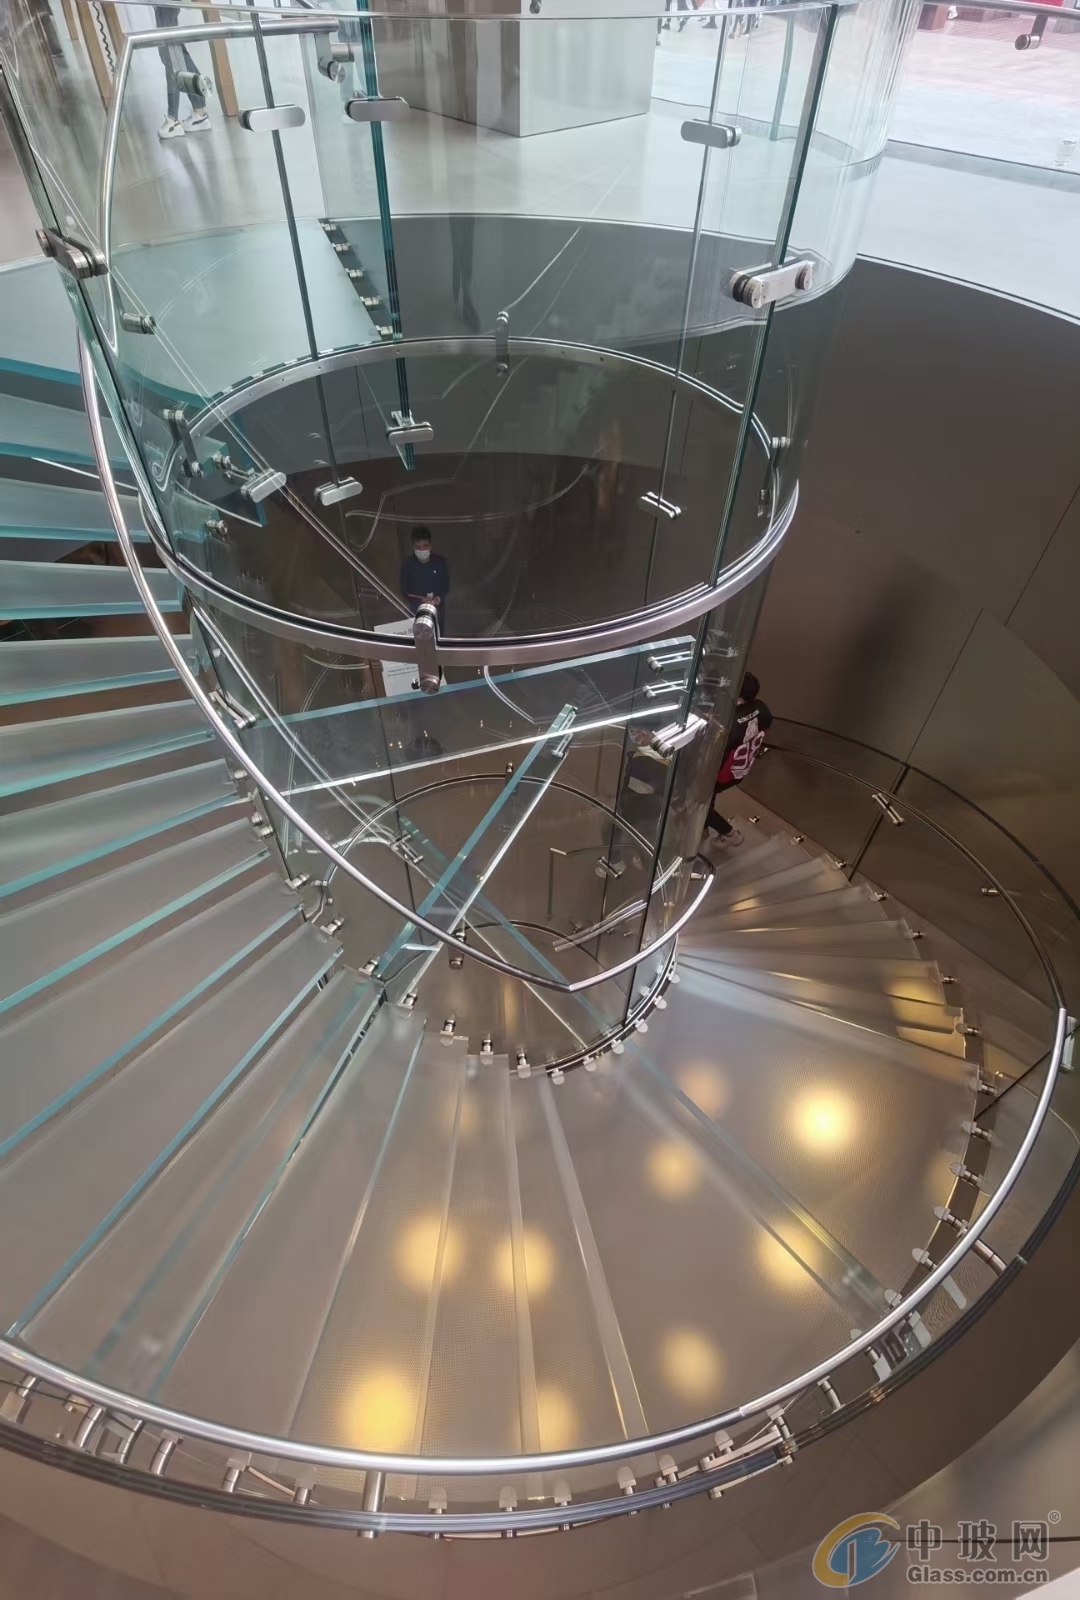 旋转楼梯、弧形楼梯、防滑楼梯、玻璃楼梯、热弯玻璃、多曲玻璃、弯钢玻璃